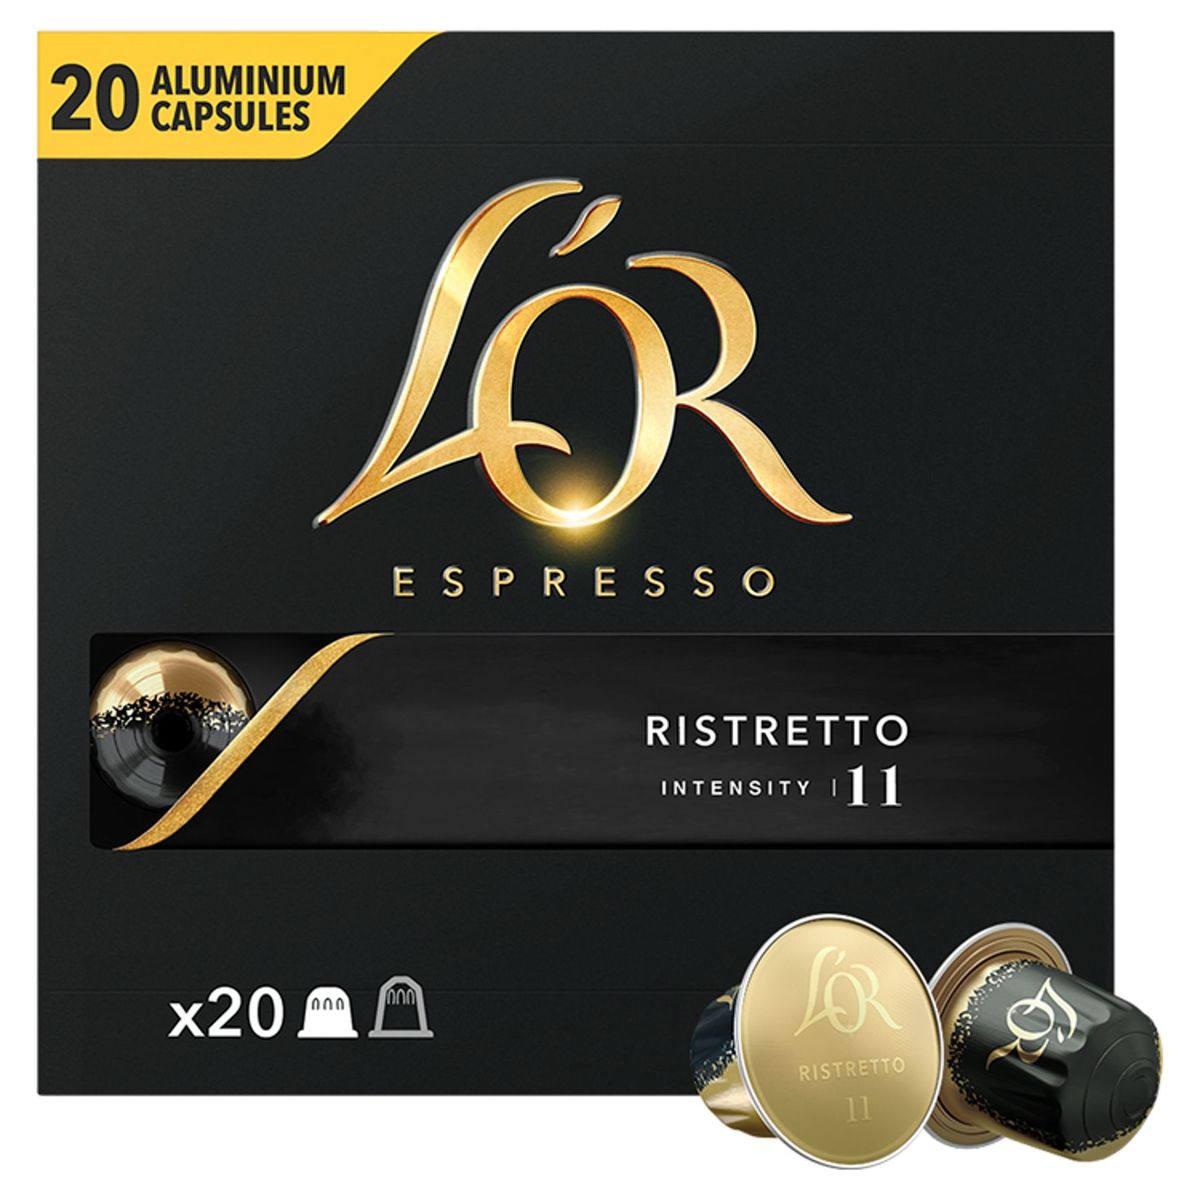 L'OR Koffie Capsules Espresso Ristretto Intensiteit 11 20 stuks